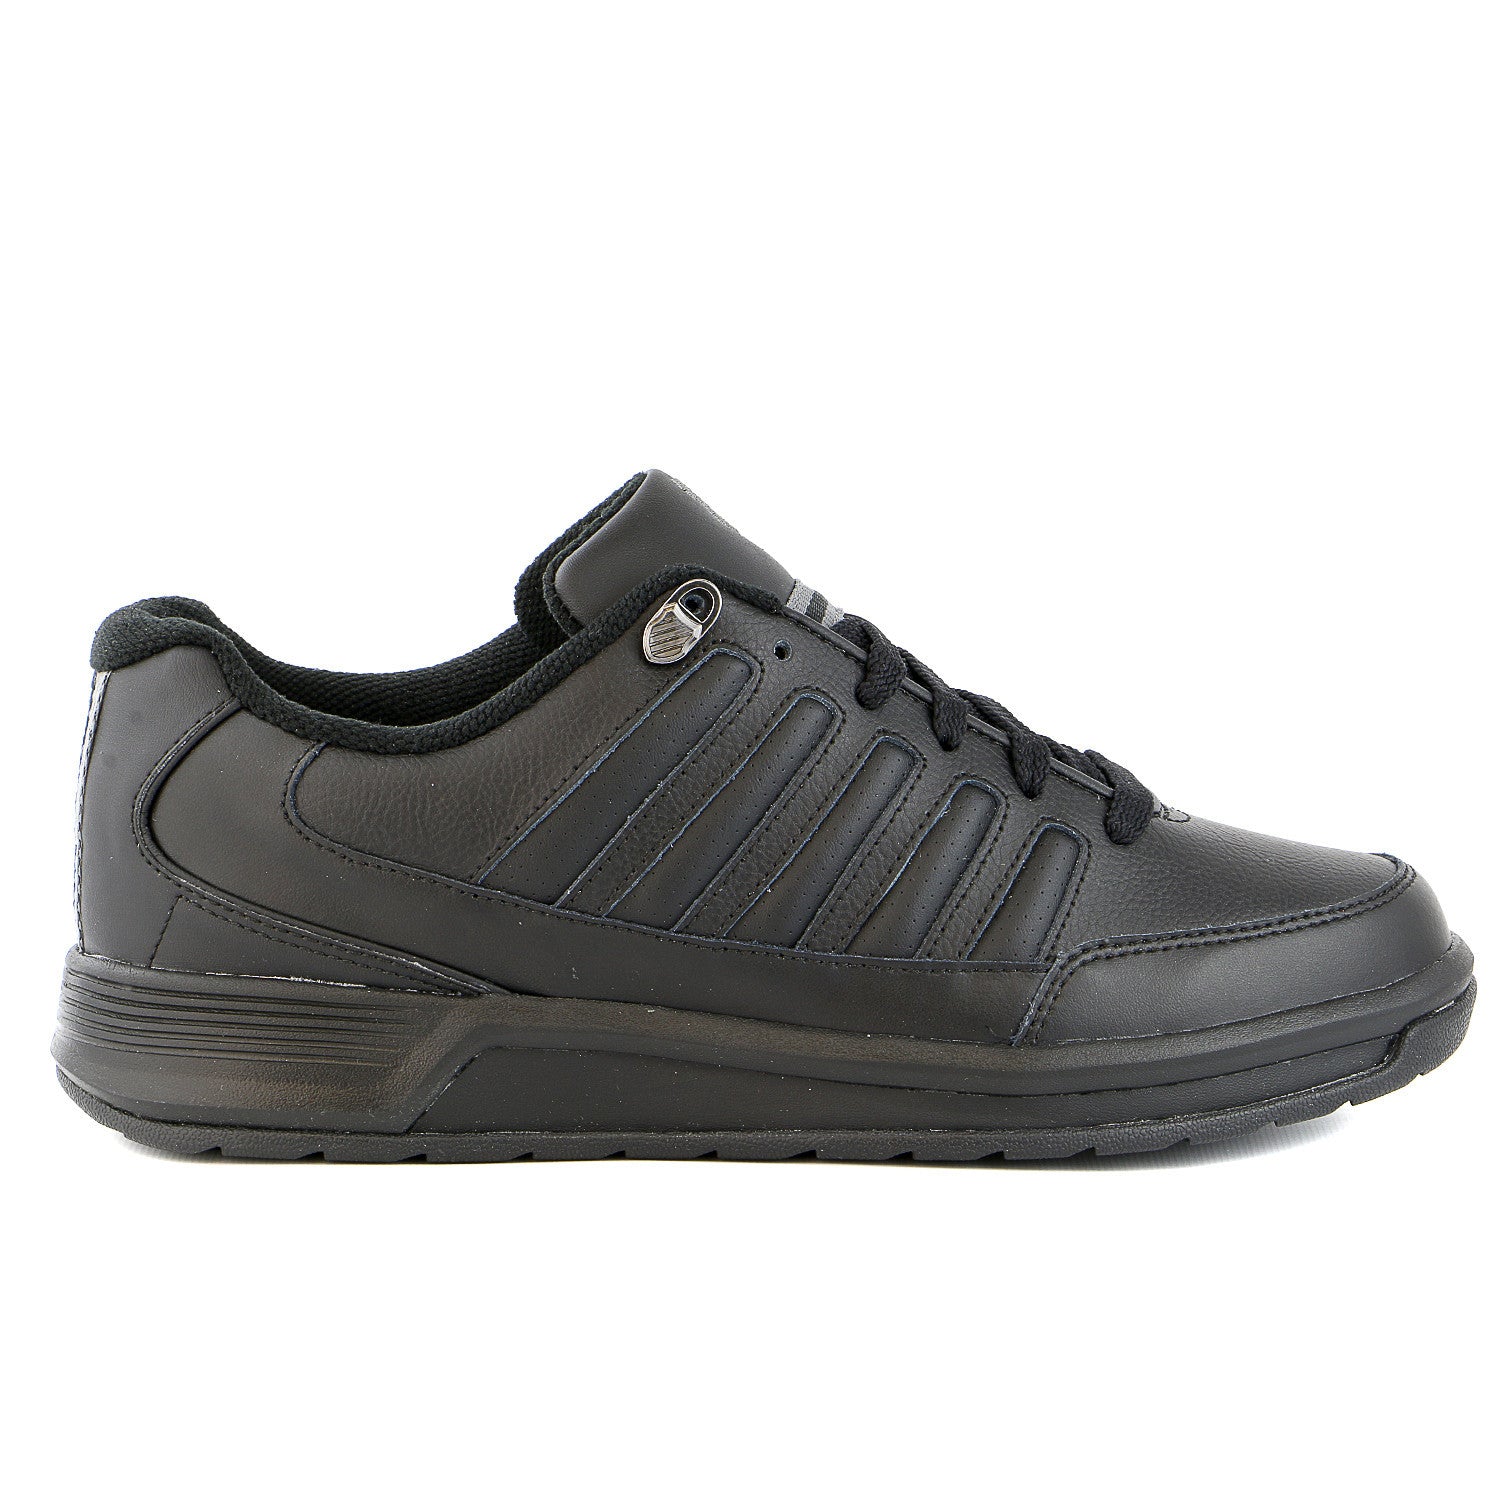 K-Swiss Berlo III Limited Edition Tennis Sneaker Shoe - Black/Charcoal ...